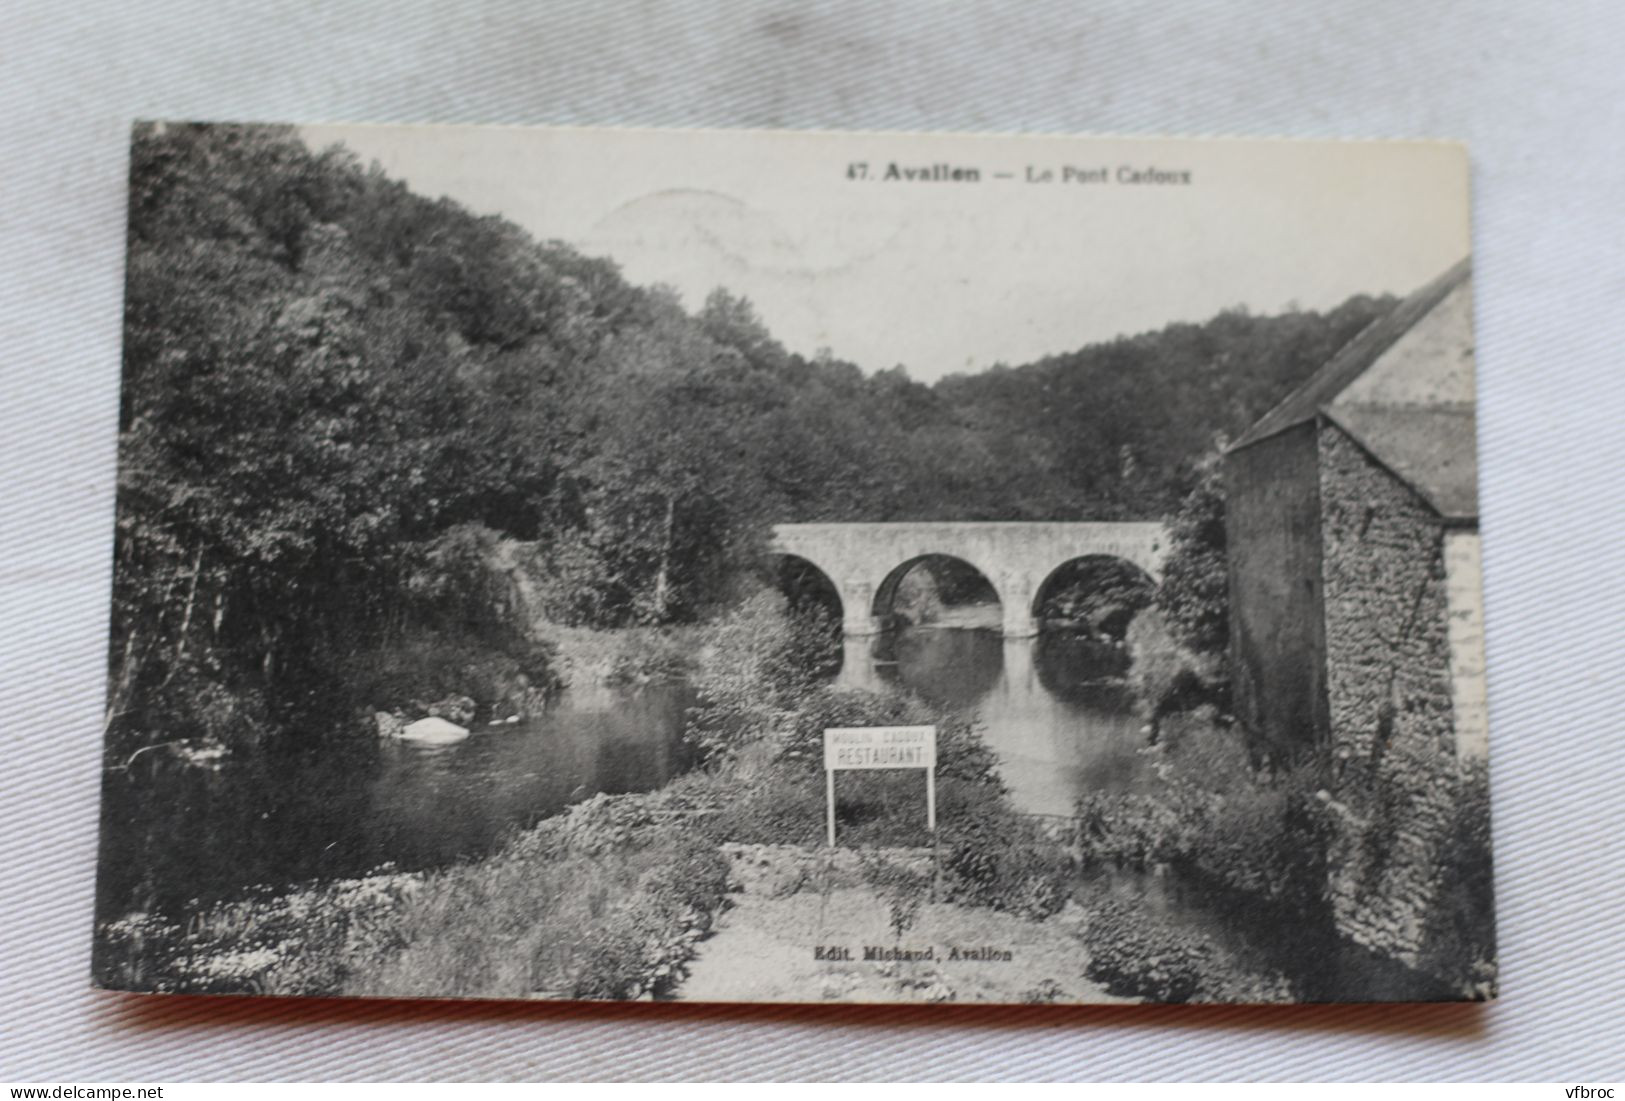 Cpa 1937, Avallon, Le Pont Cadoux, Yonne 89 - Avallon